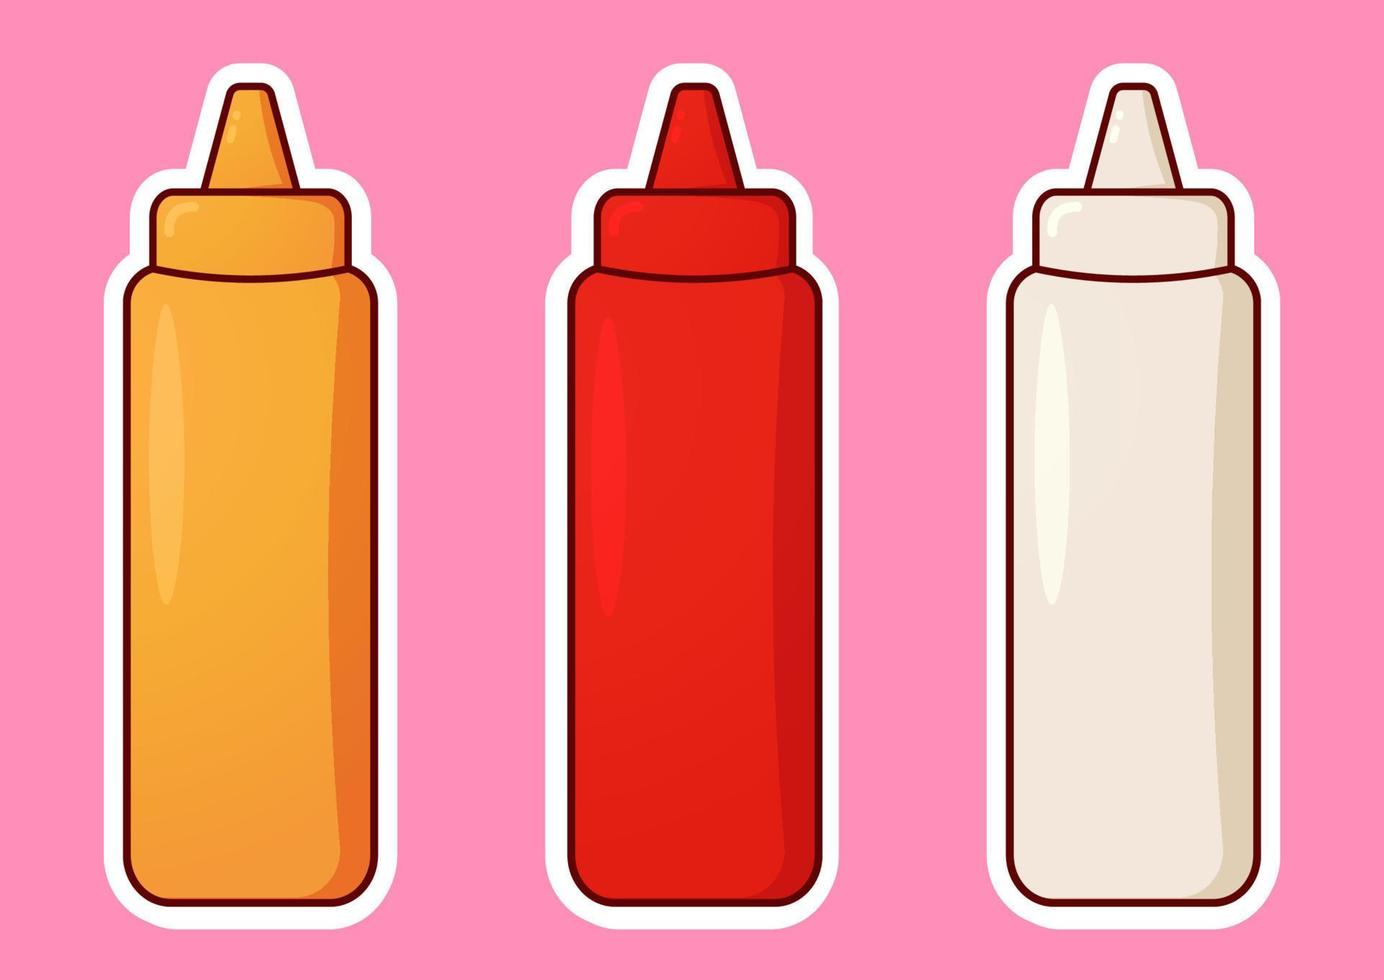 een saus fles met divers types van sauzen. tomaat ketchup, mayonaise, mosterd saus, of bbq saus. kawaii saus pak in plastic container. schattig tekenfilm vector illustratie. sticker ontwerp.